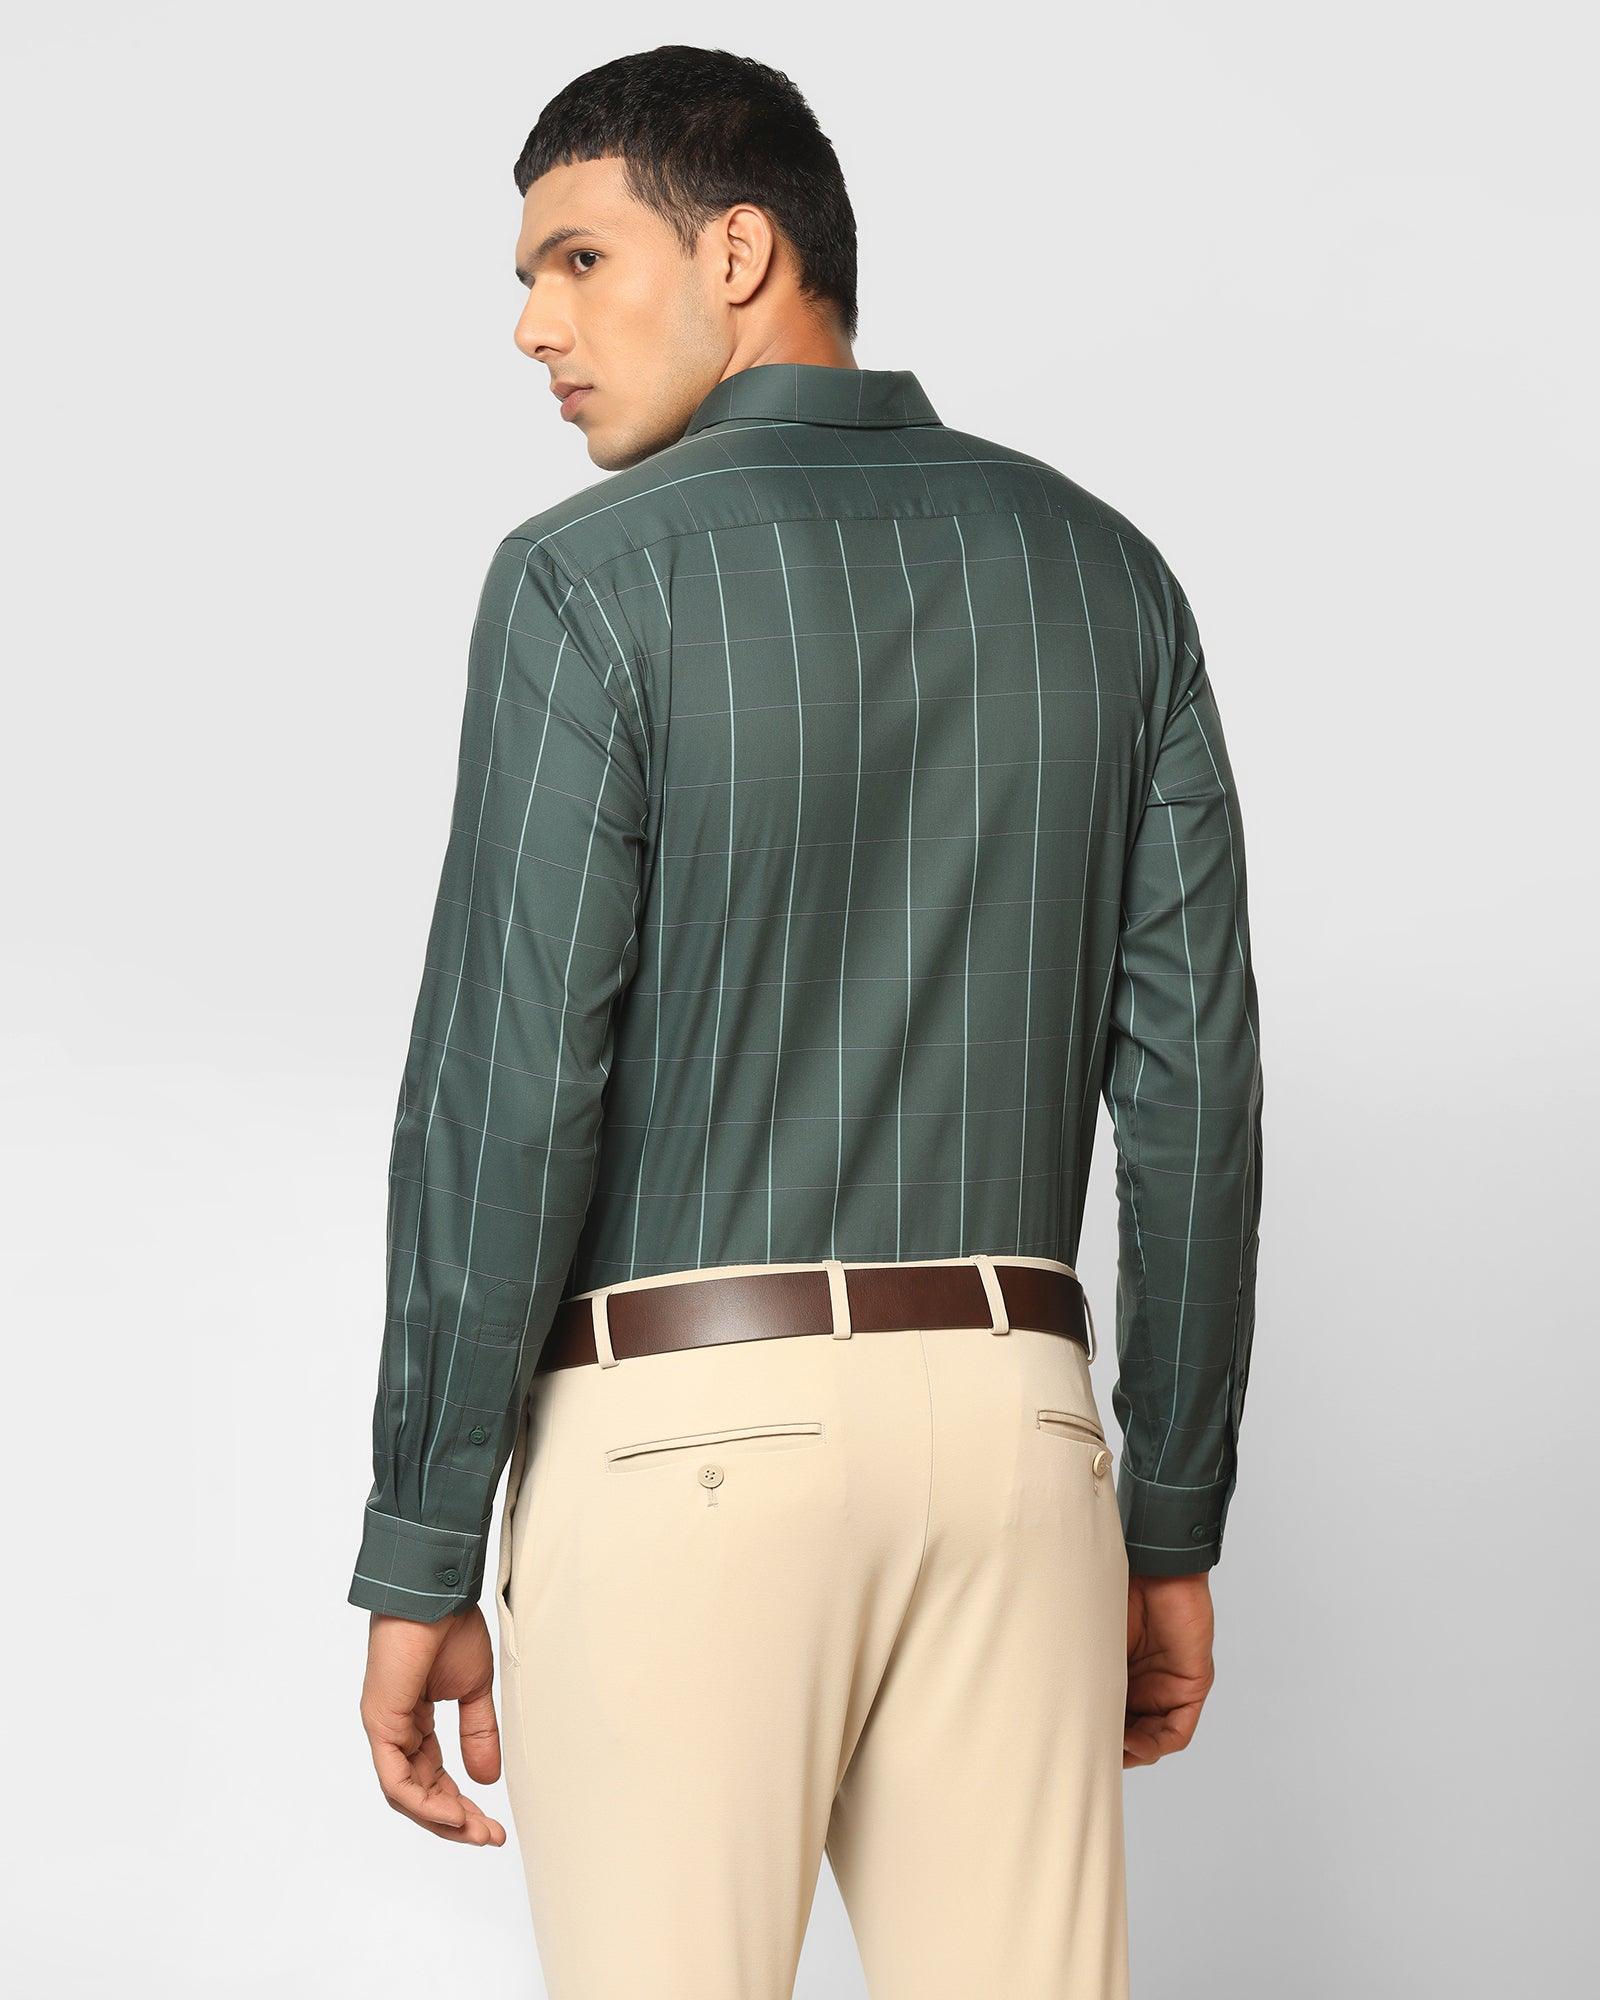 TechPro Formal Green Check Shirt - Digo